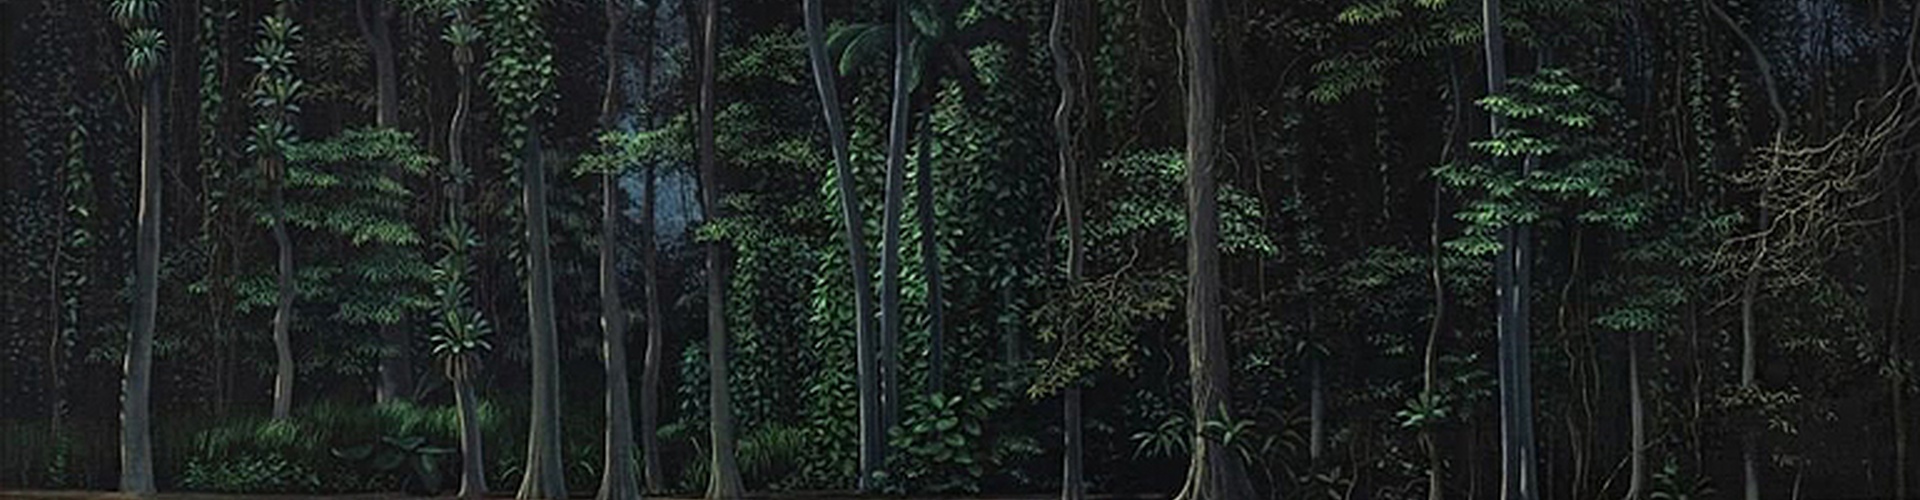 گالری نقاشی های "توماس سانچز"